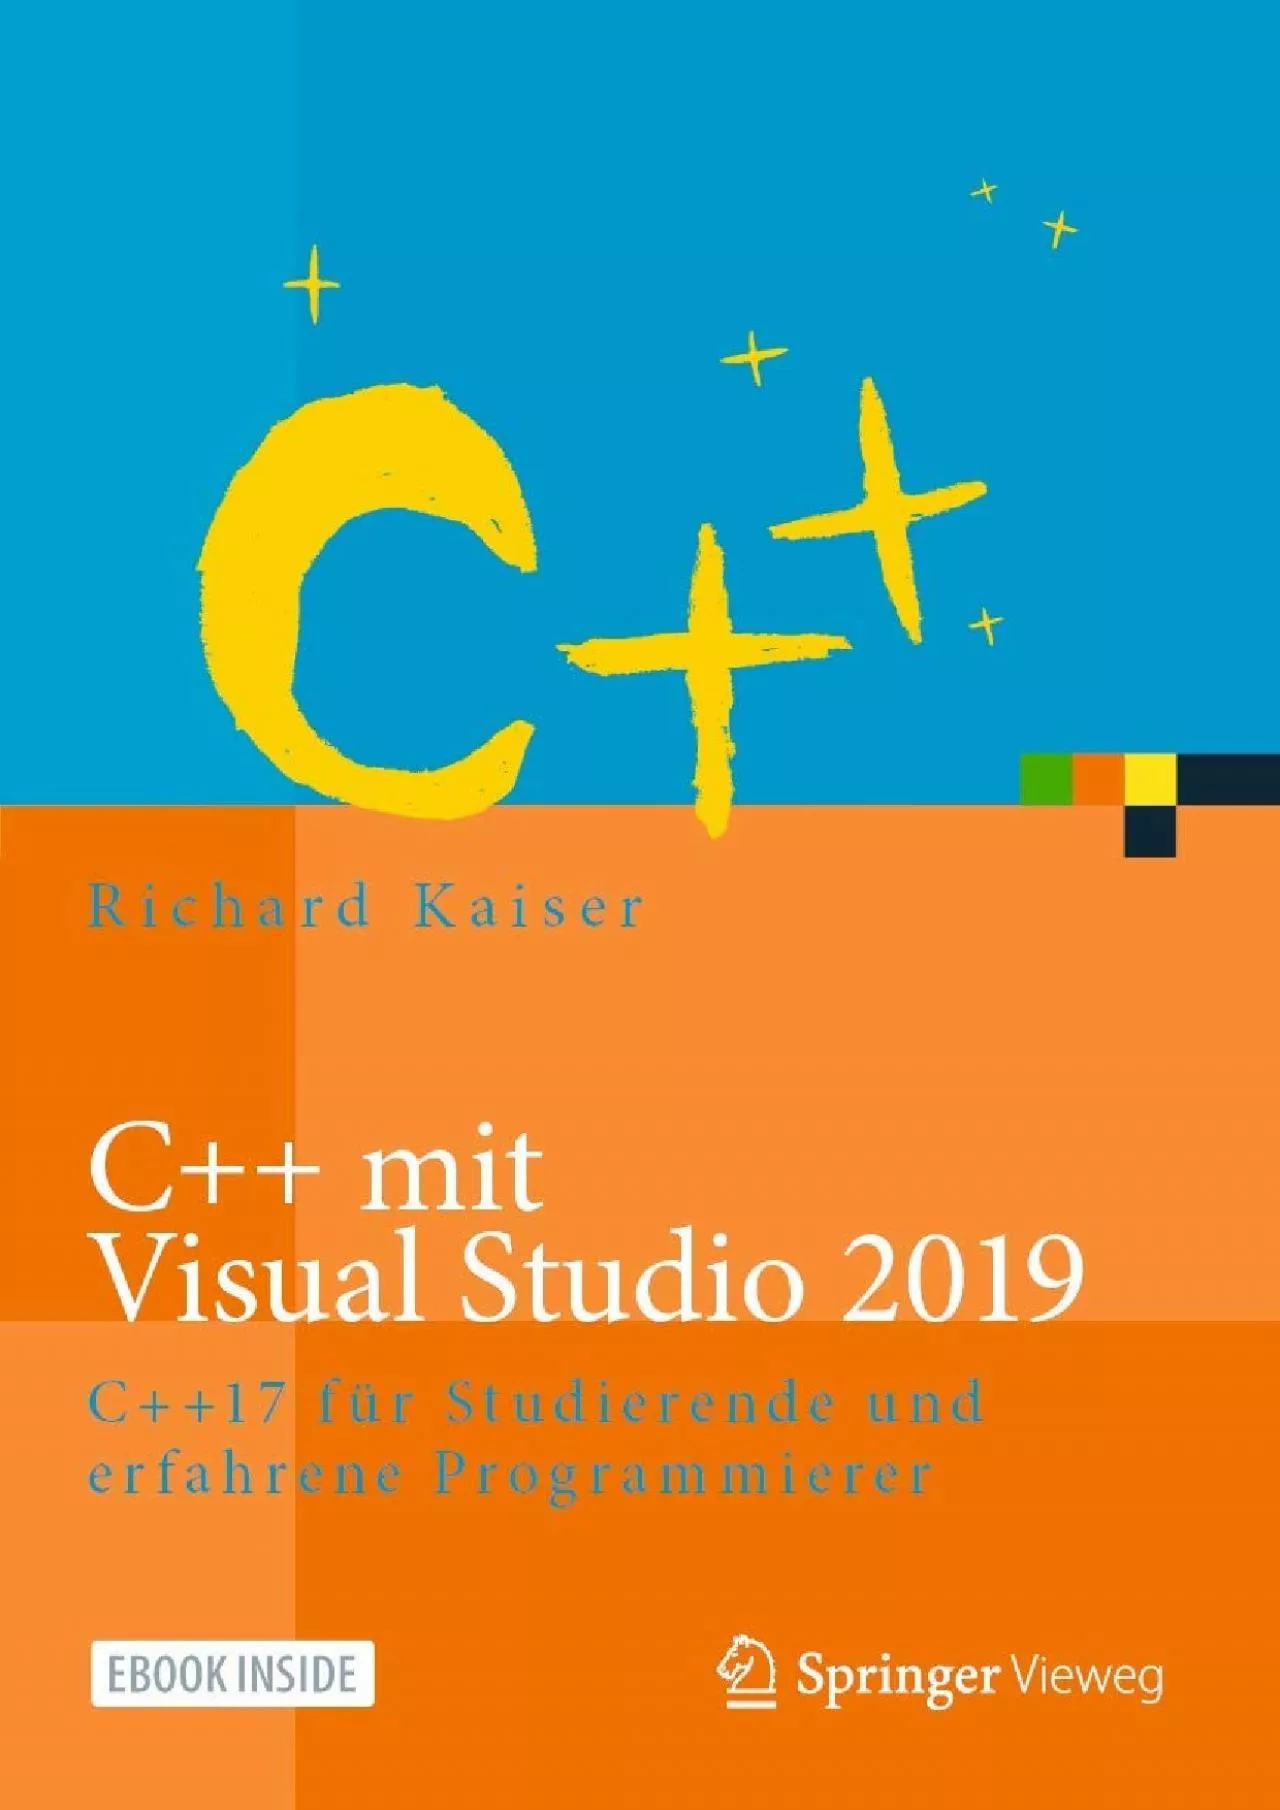 [PDF]-C++ mit Visual Studio 2019: C++17 für Studierende und erfahrene Programmierer (German